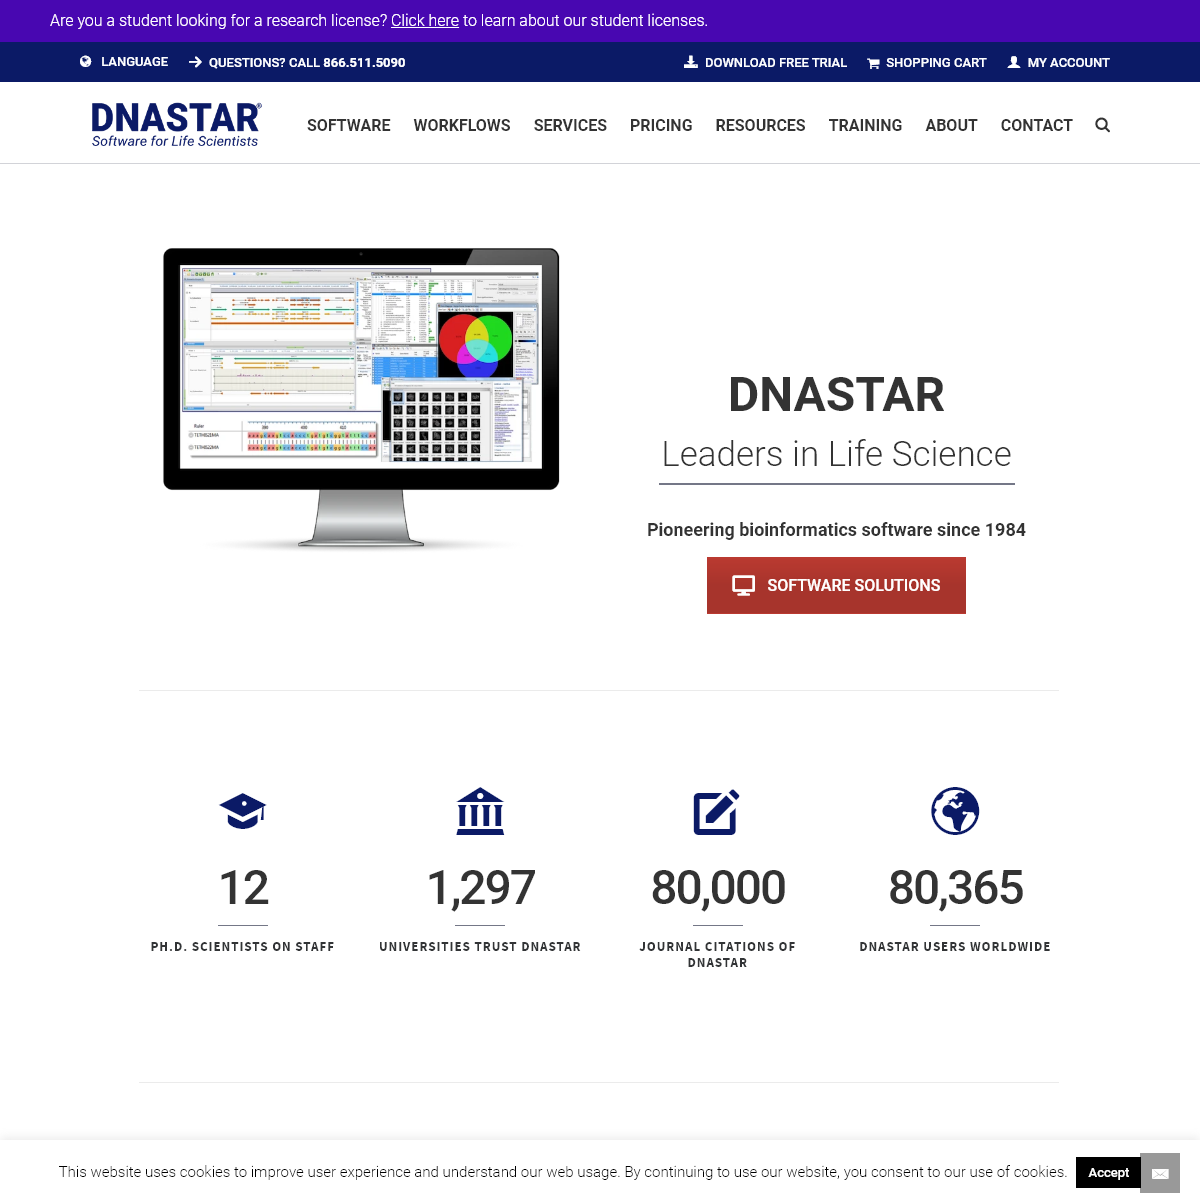 A complete backup of dnastar.com